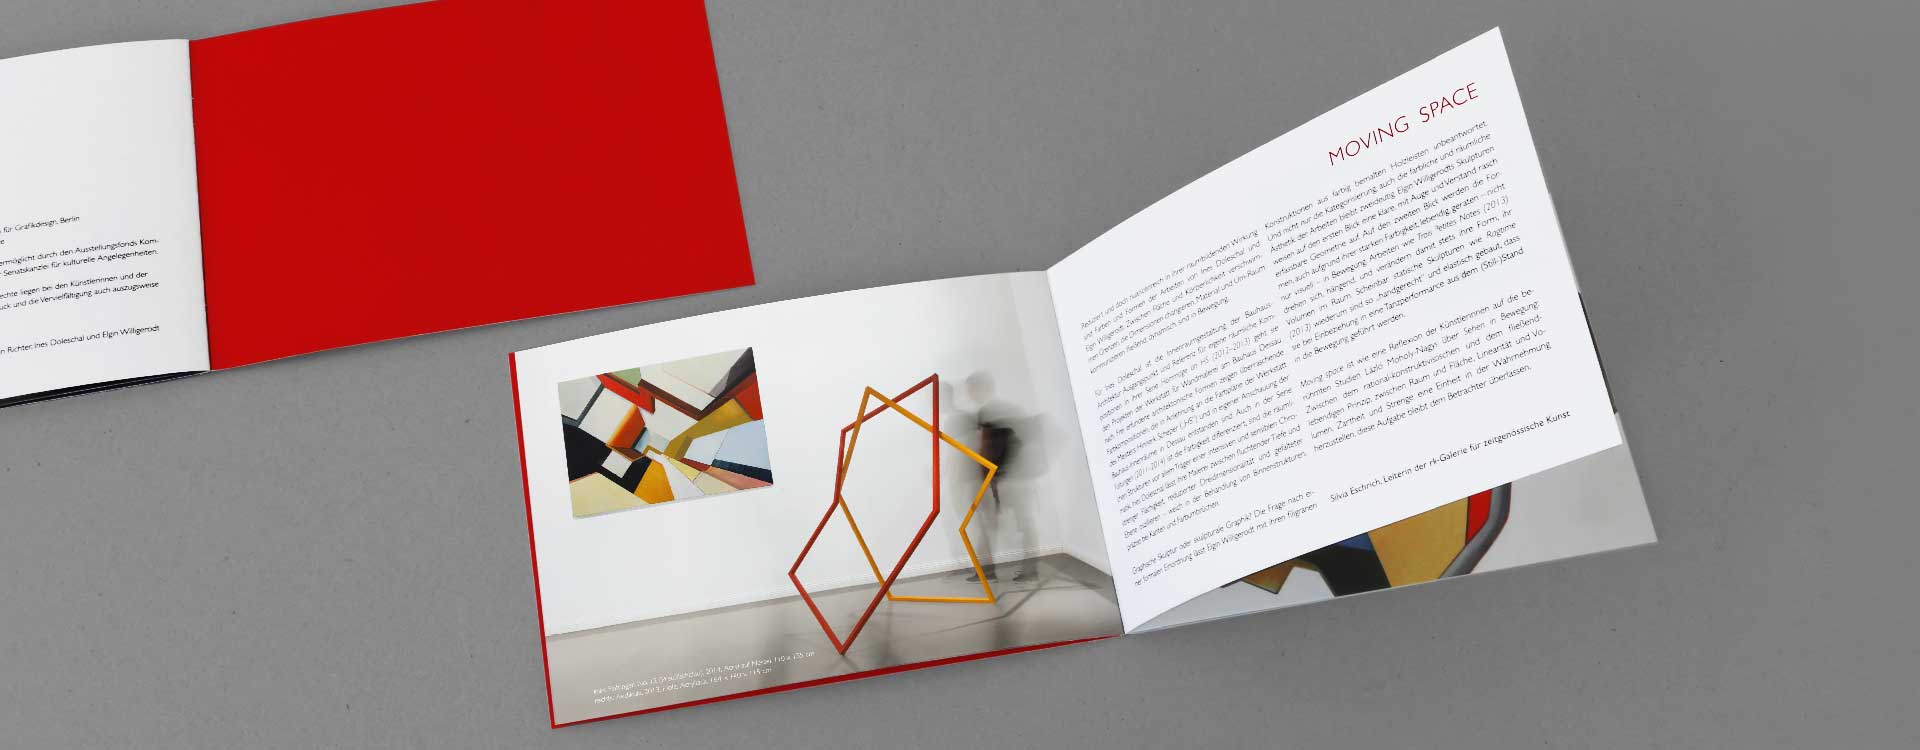 Katalog „Moving Space“ in der rk Galerie für zeitgenössische Kunst, Berlin; Design: Kattrin Richter | Büro für Grafikdesign